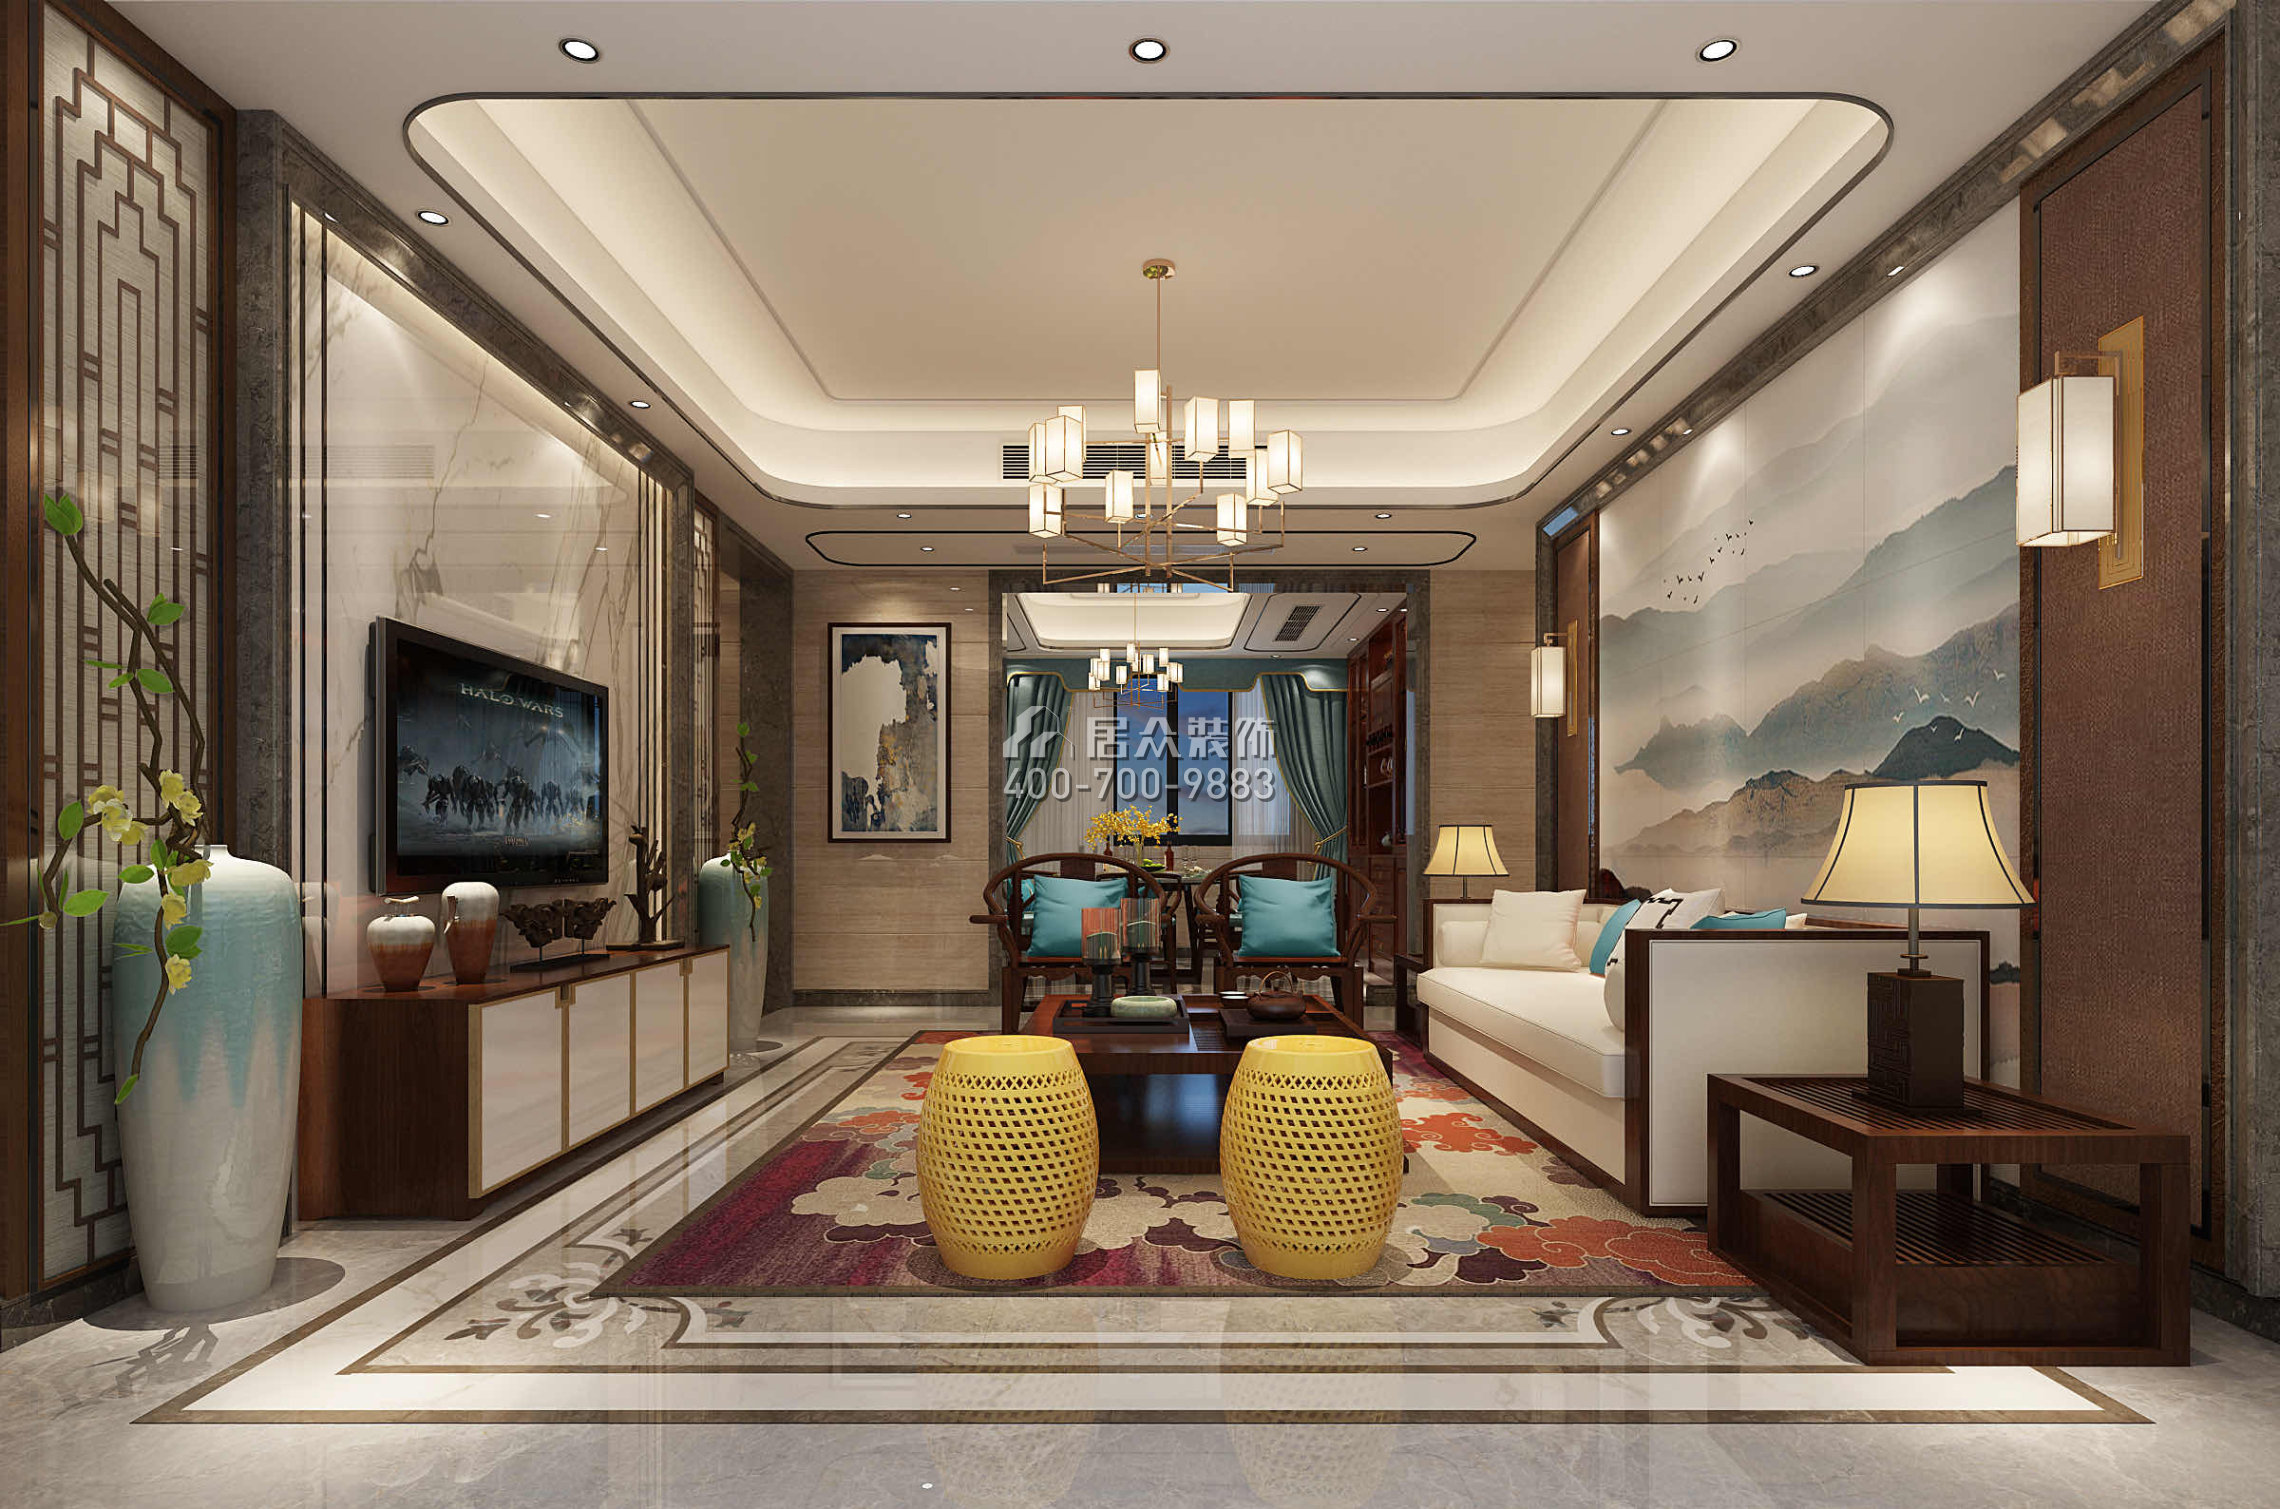 嘉华星际湾180平方米中式风格平层户型客厅装修效果图